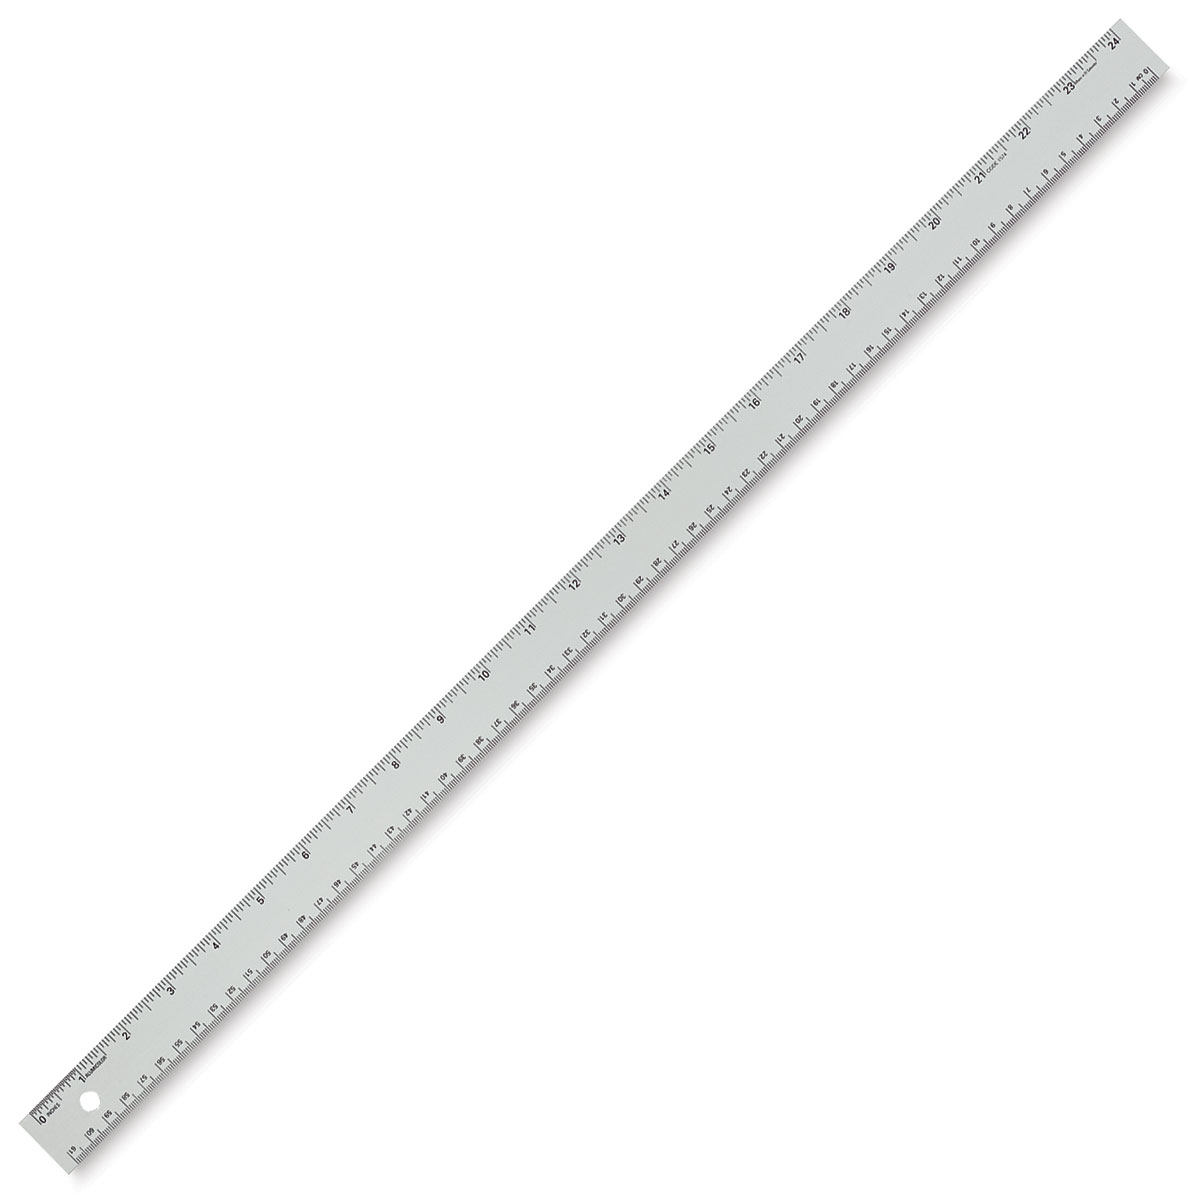 Blick Aluminum Non-Slip Ruler - 6